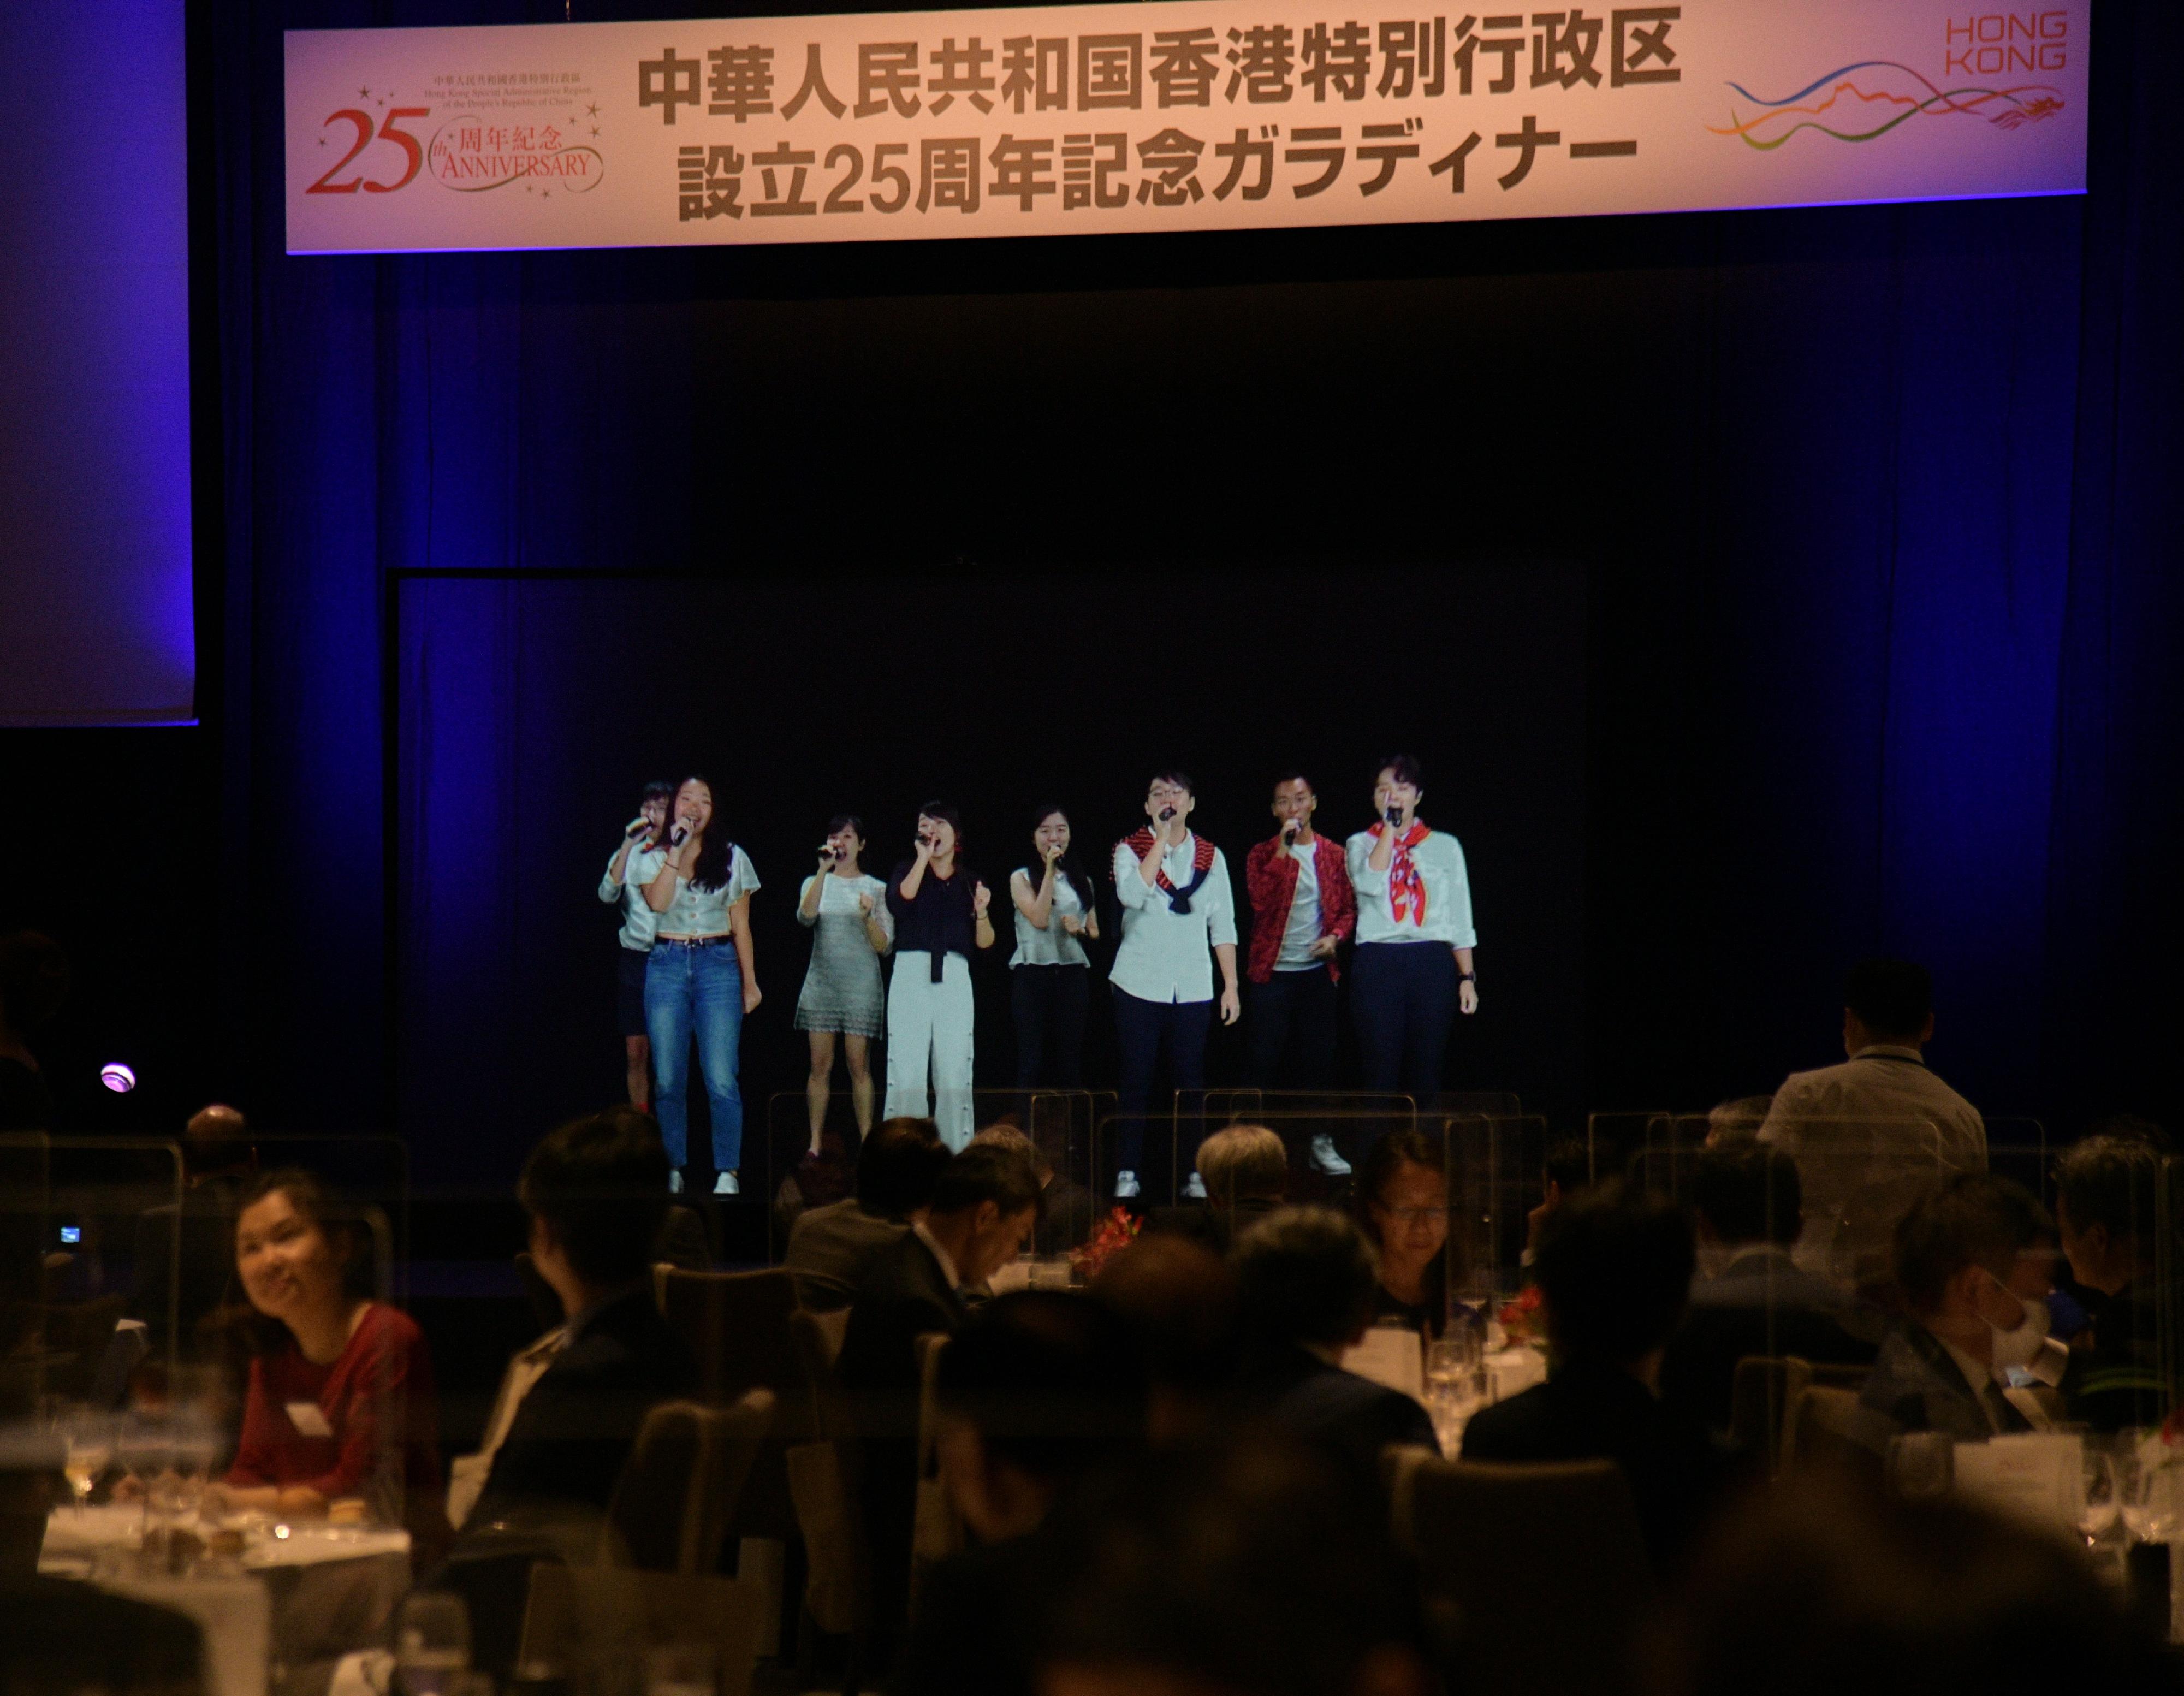 香港駐東京經濟貿易辦事處今日（七月二十九日）於日本東京舉行晚宴，慶祝香港特別行政區成立二十五周年。通過全息投影技術，香港青年協會今日在香港為晚宴現場呈獻無伴奏合唱表演。